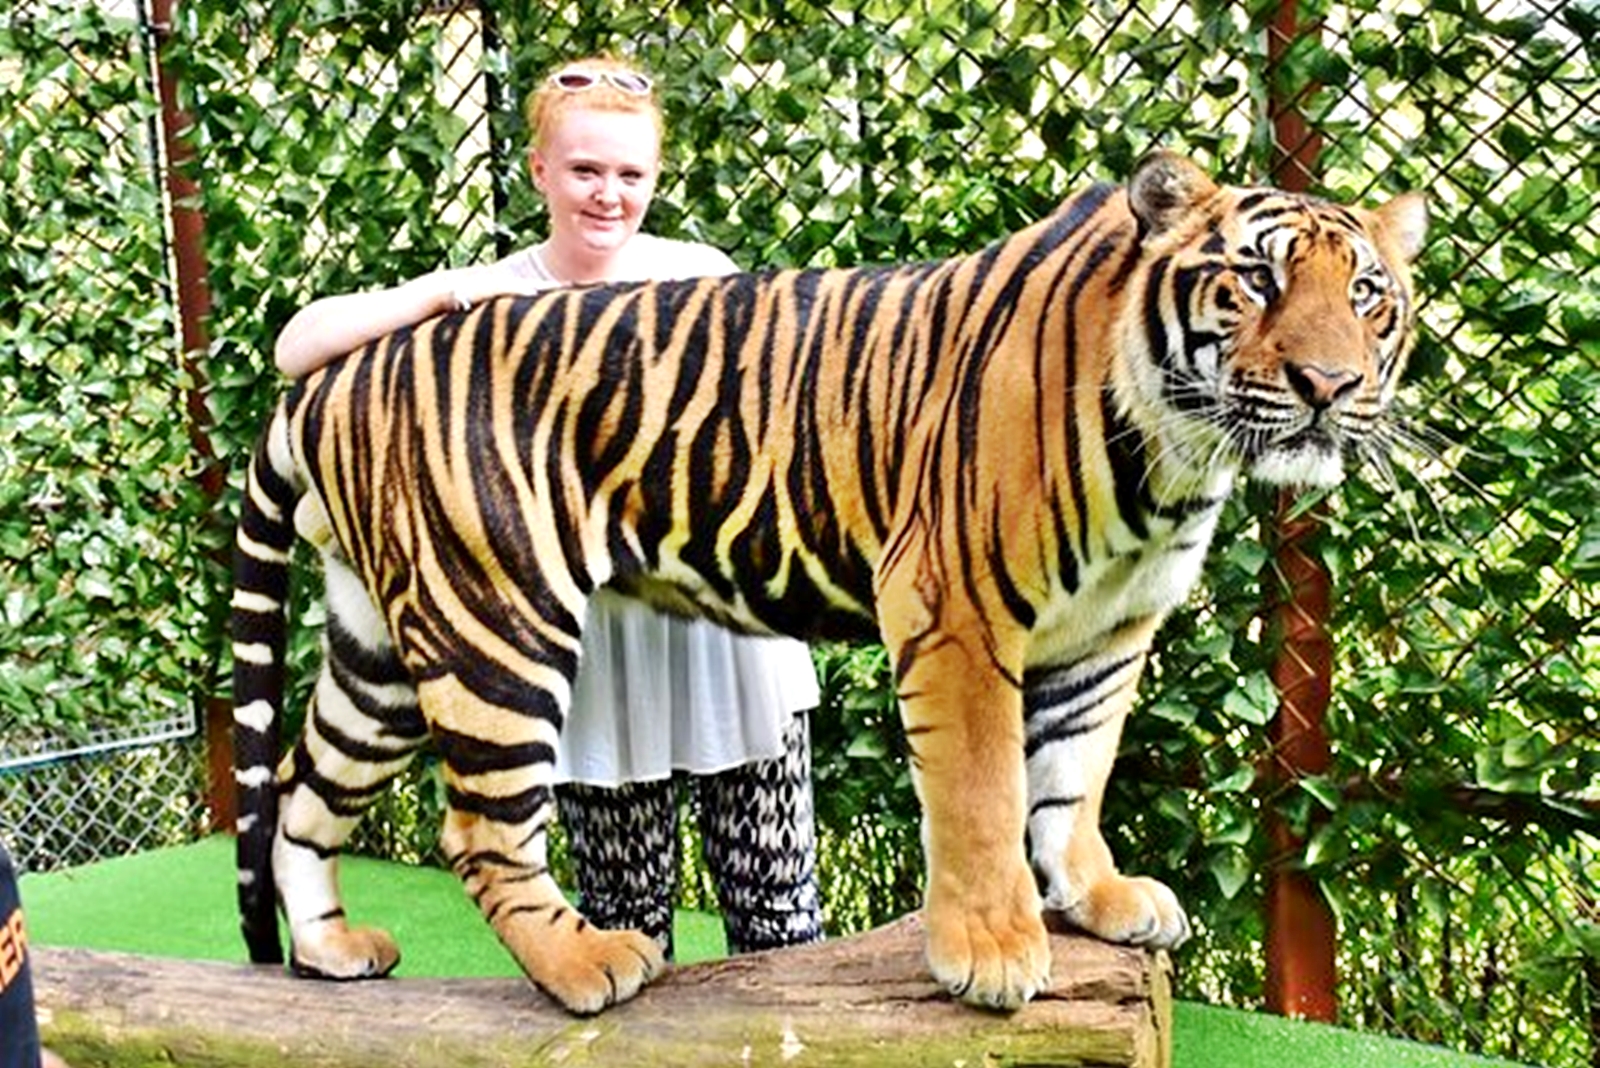 Tiger Kingdom Phuket - Anny Taxi & Tours Phuket